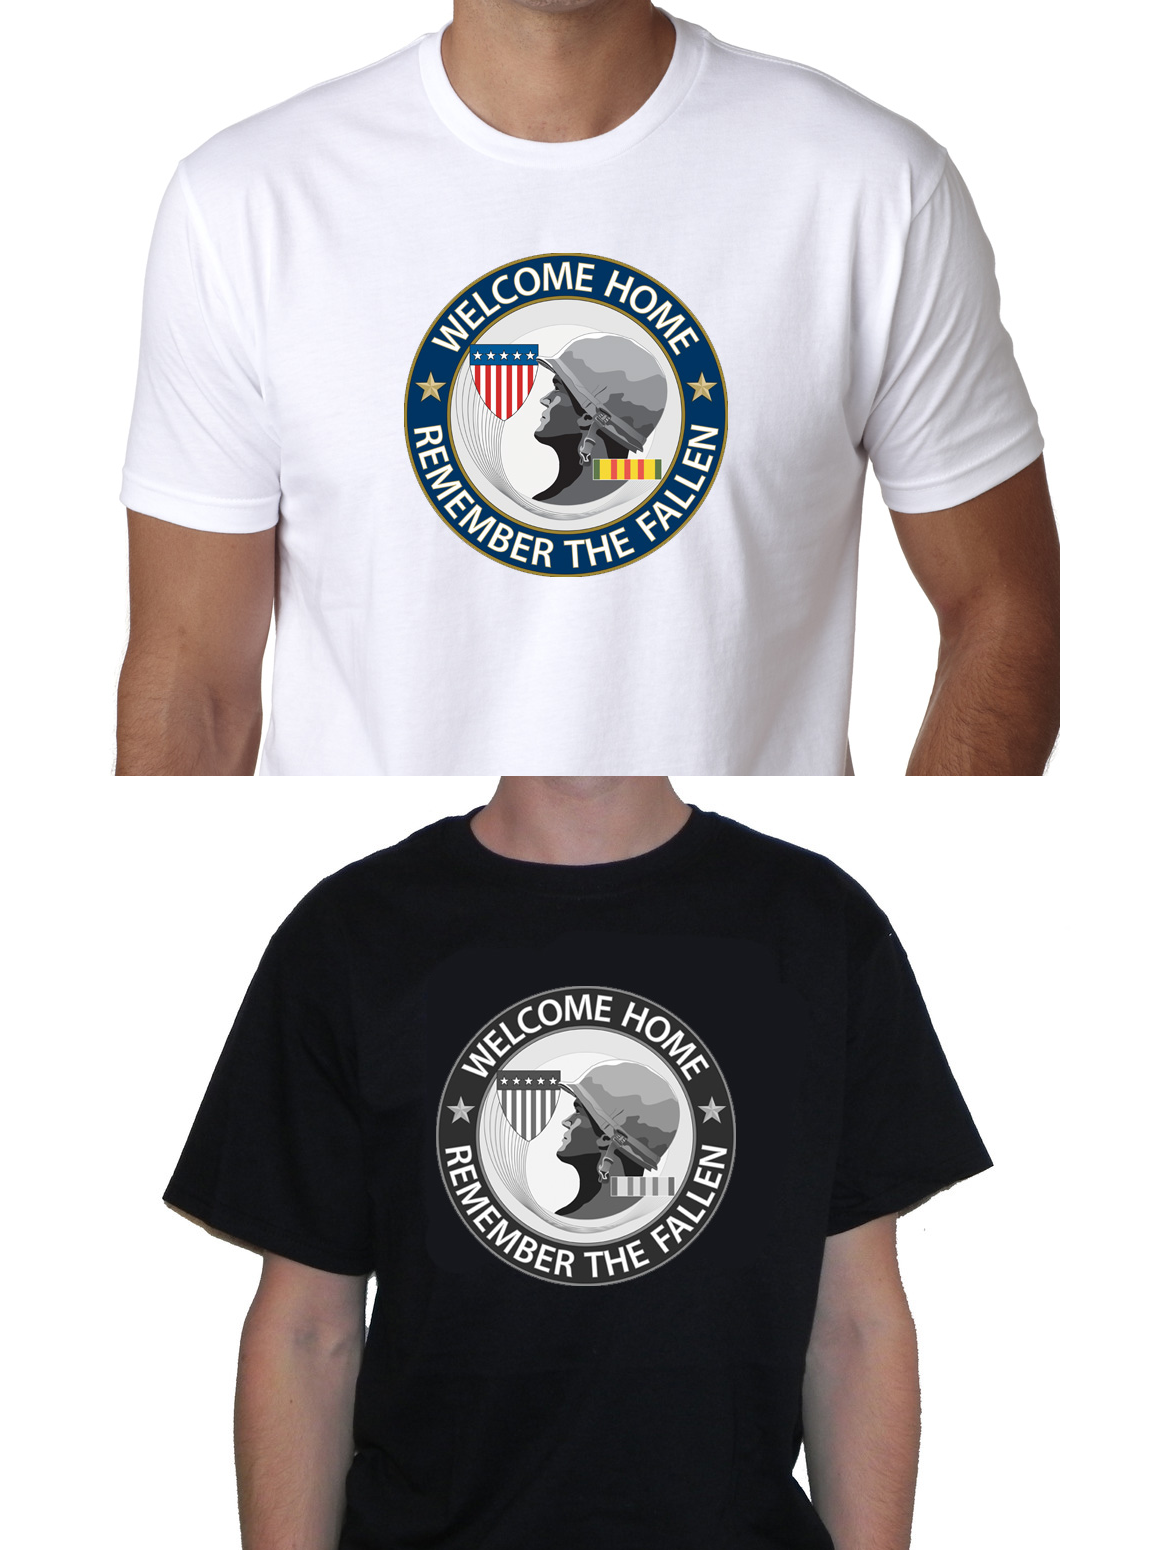 Vietnam event t-shirts